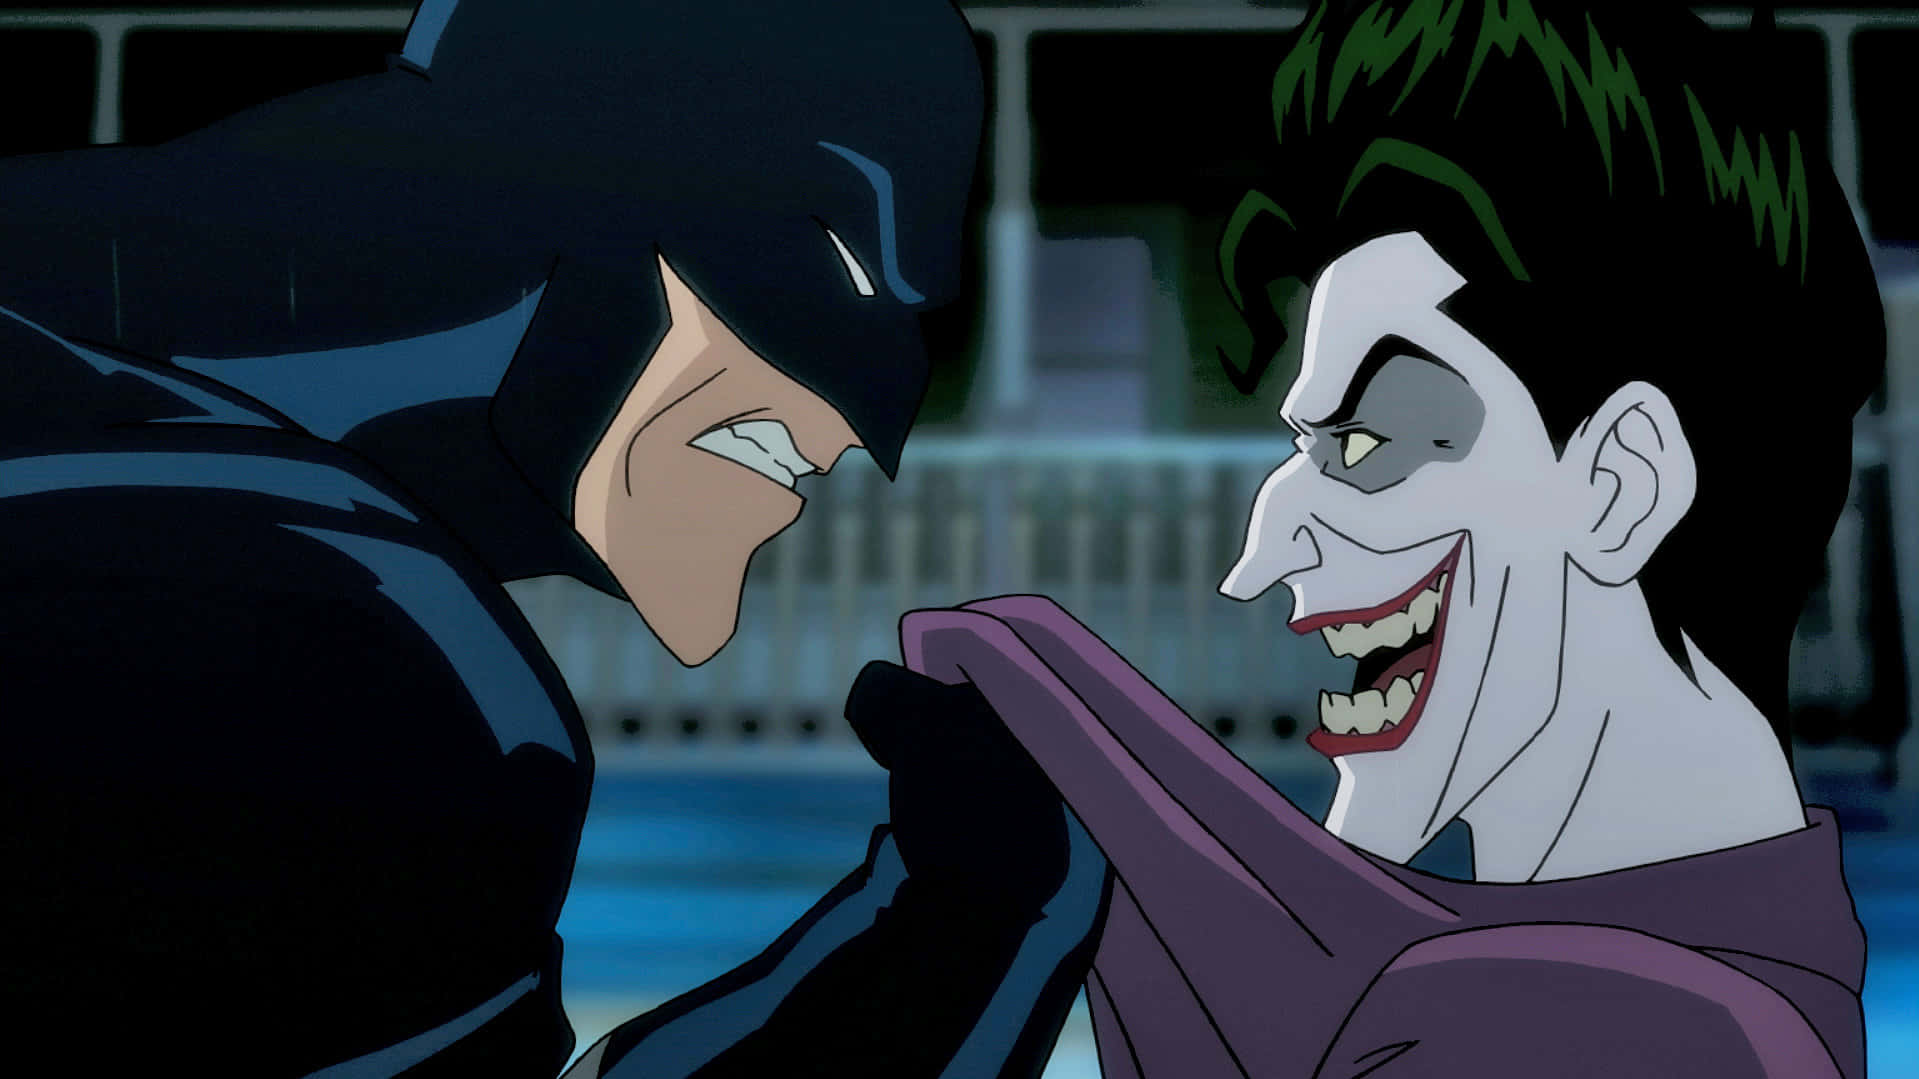 The Killing Joke - Joker's sinister grin Wallpaper